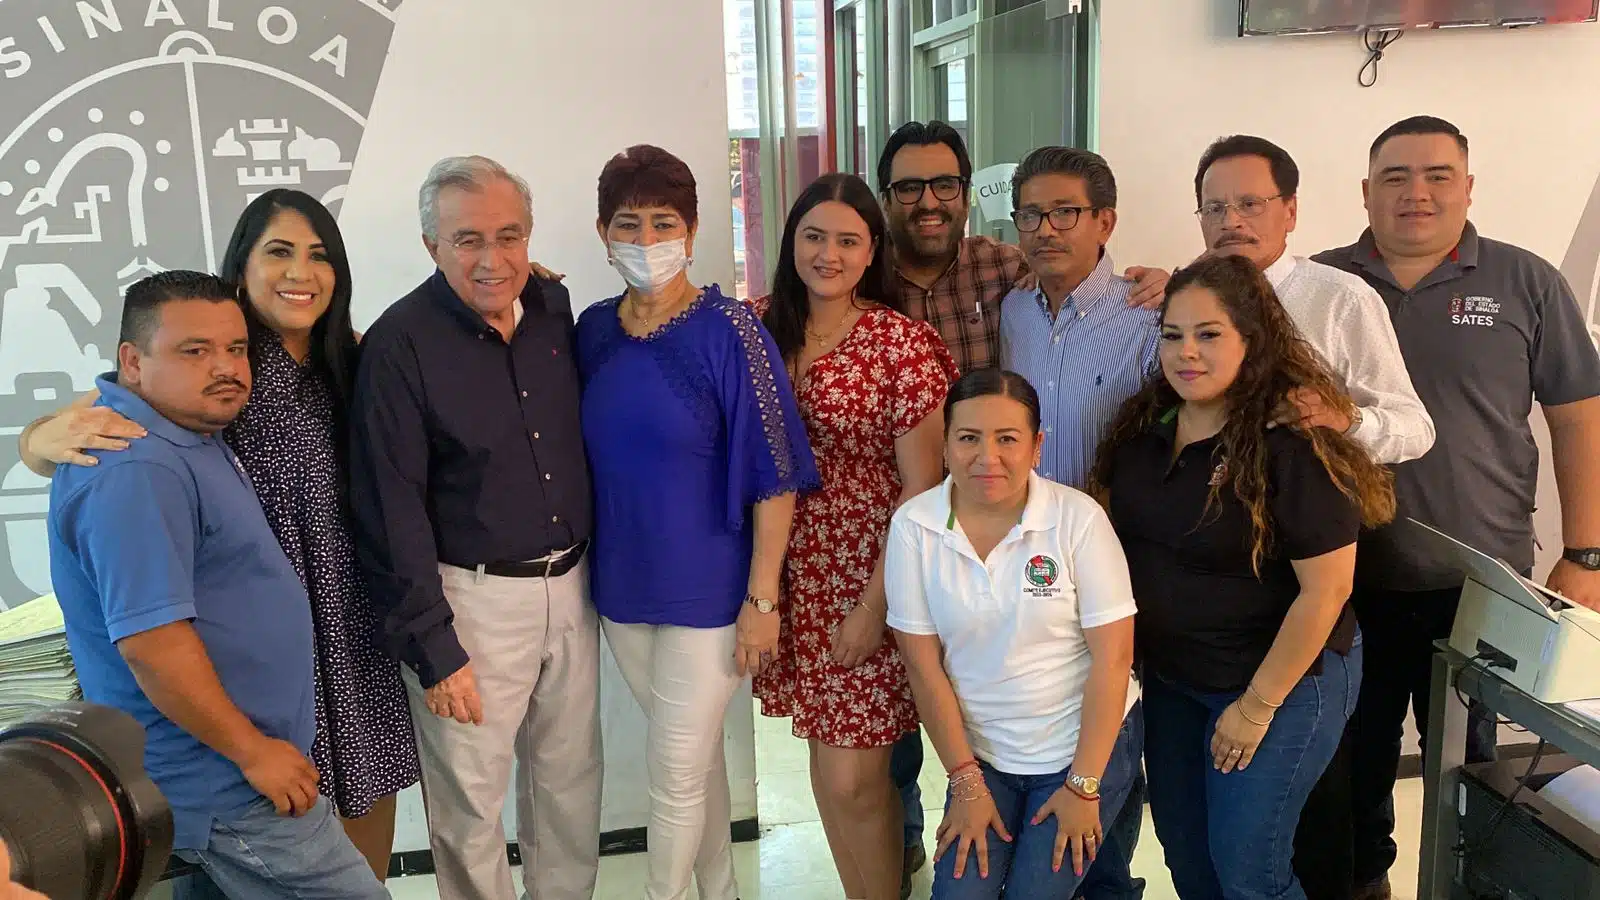 Gobernador Rocha junto a los alcaldes de Guasave, Culiacán y los trabajadores de la Unidad de Servicios Estatales